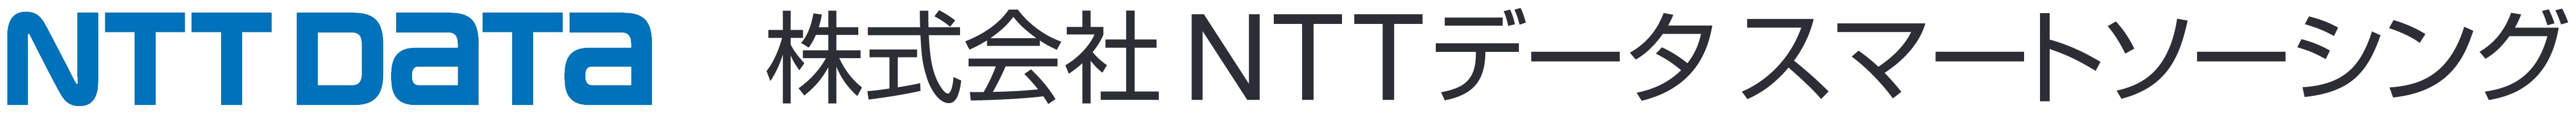 株式会社 NTTデータ スマートソーシング